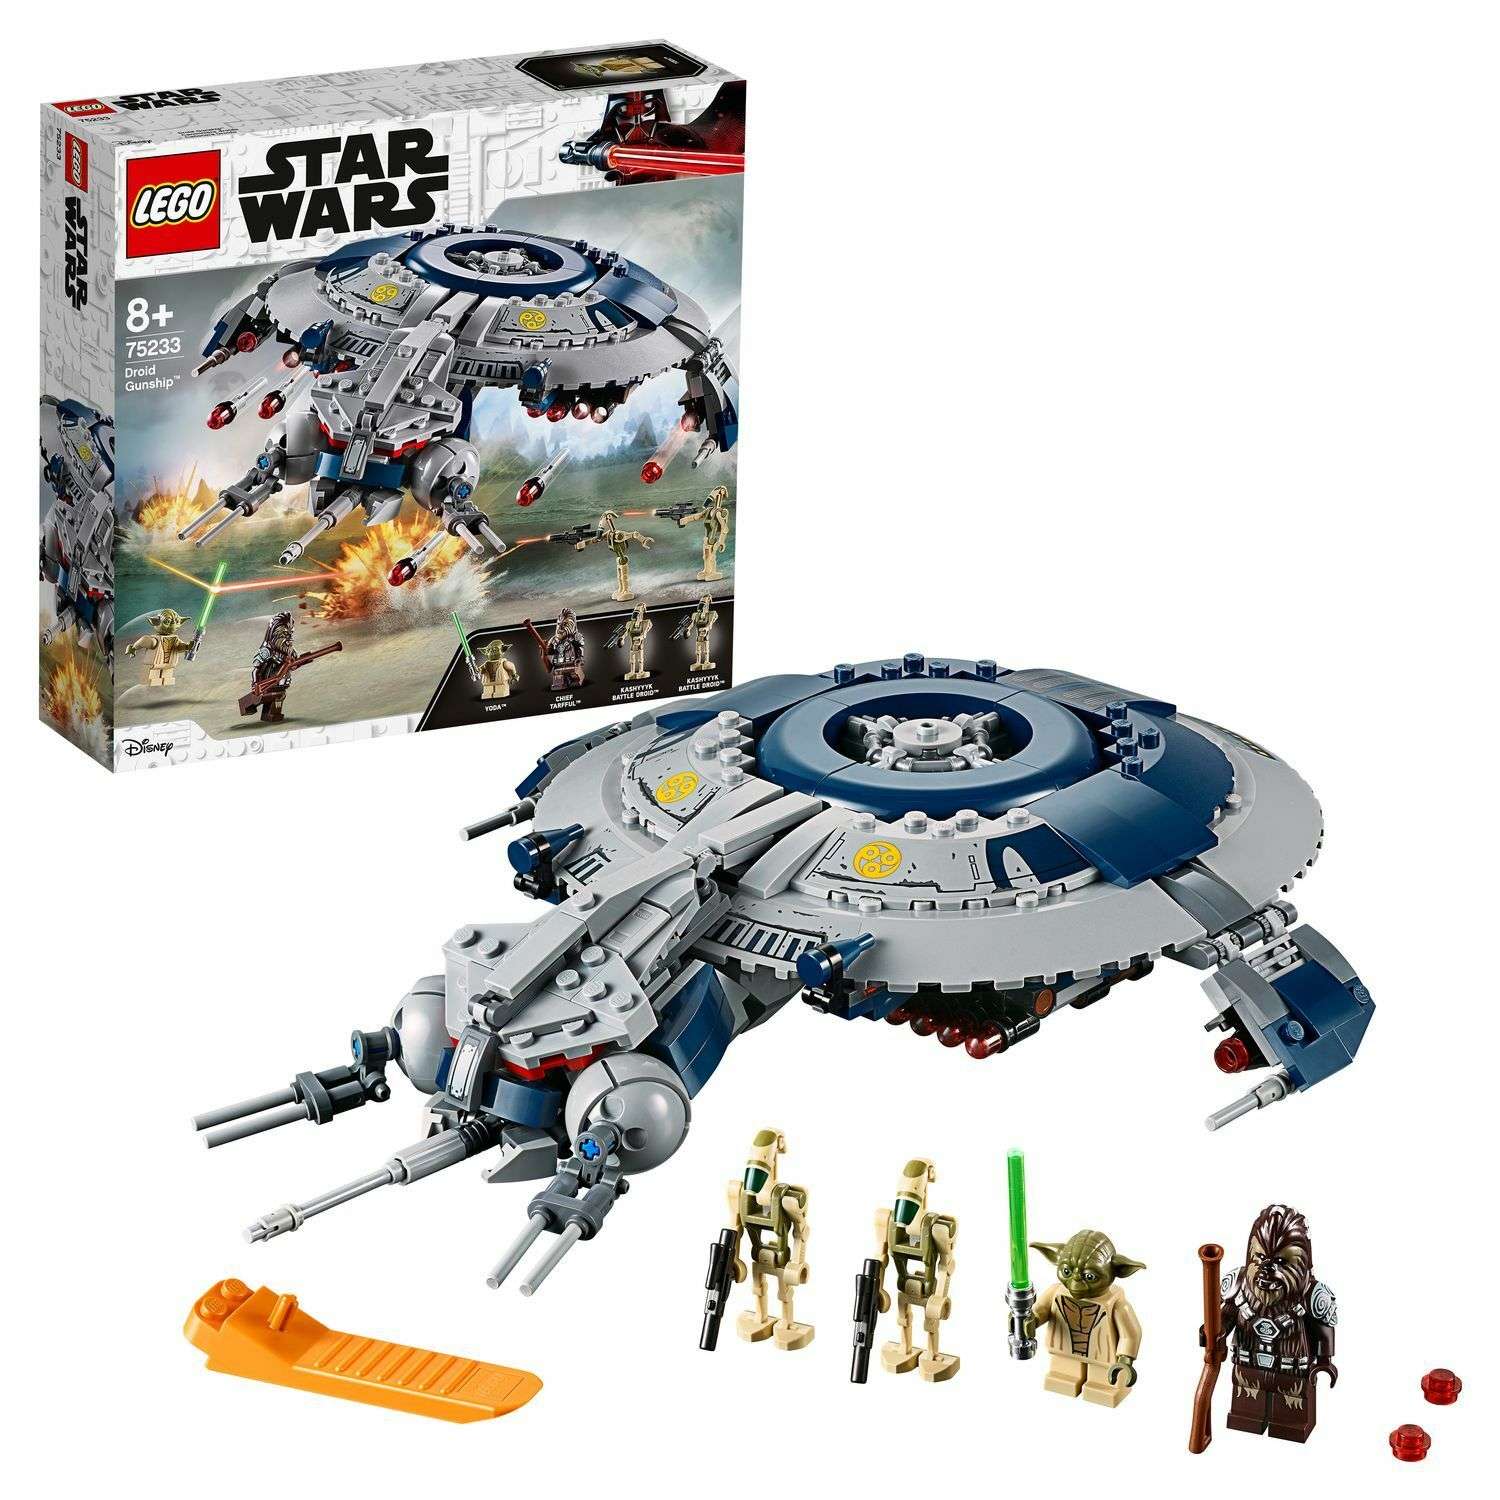 Конструктор LEGO Star Wars Дроид-истребитель 75233 - фото 1